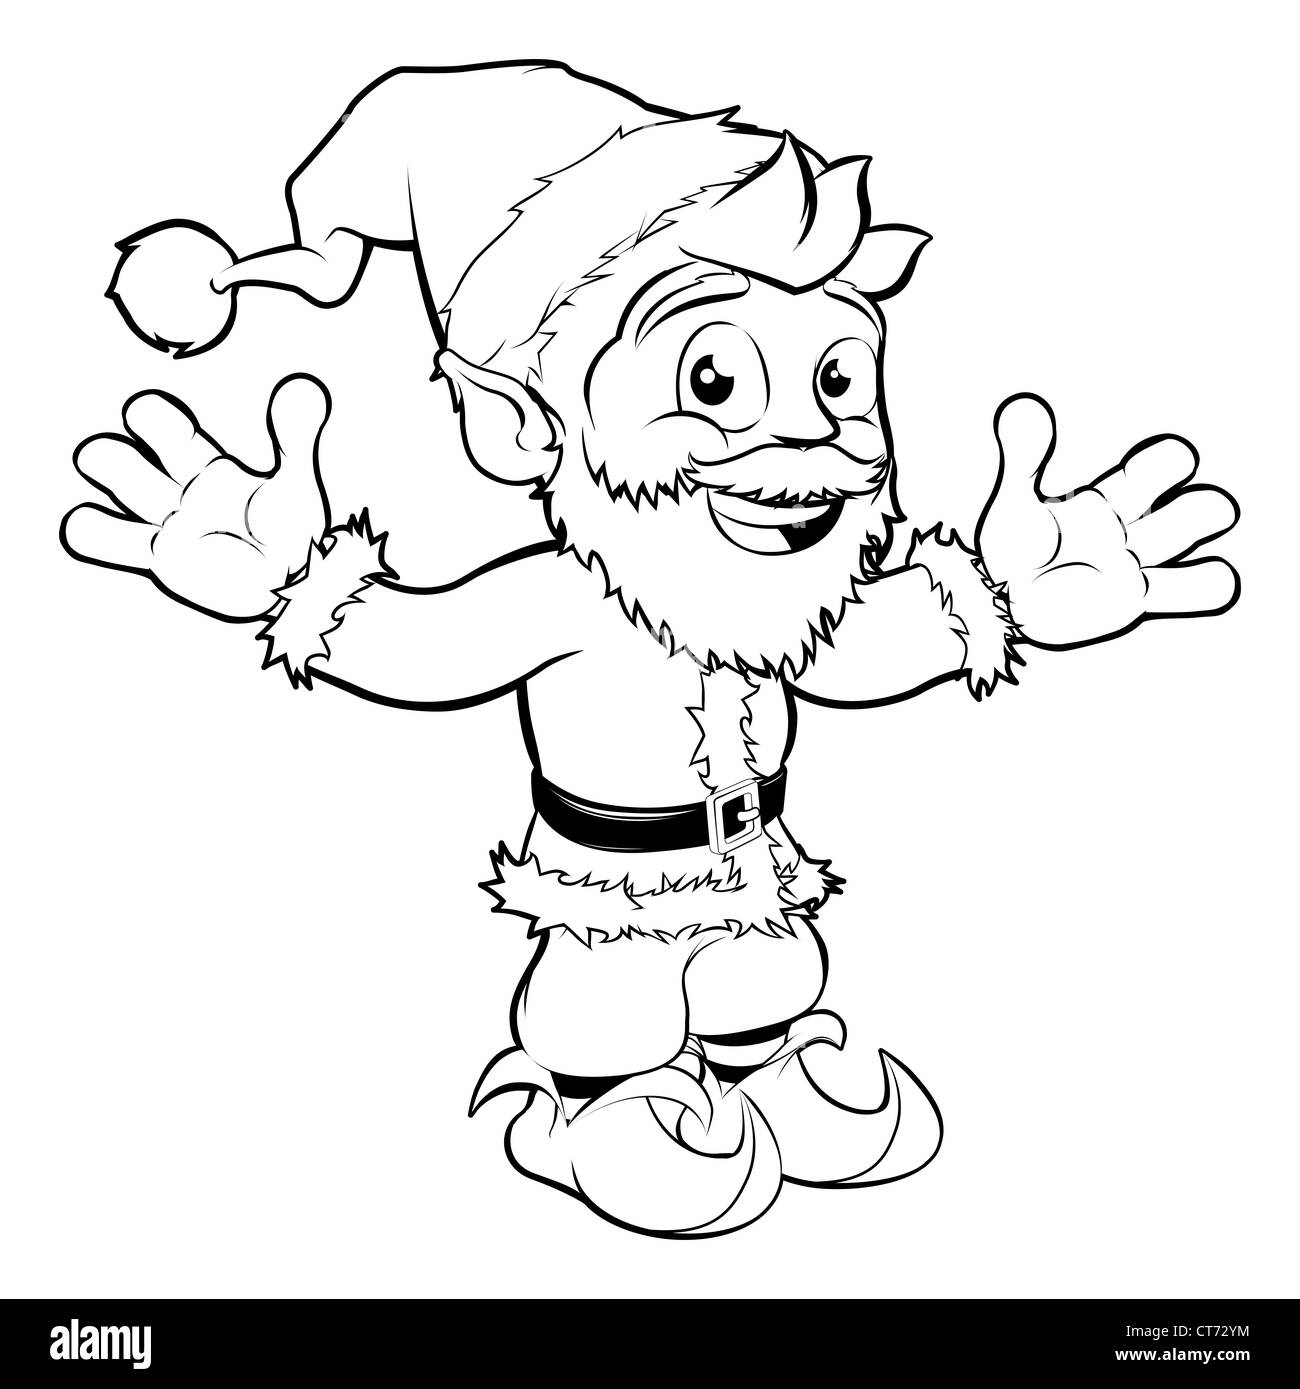 Noël monochrome dimensions de Santa heureux smiling and waving Banque D'Images